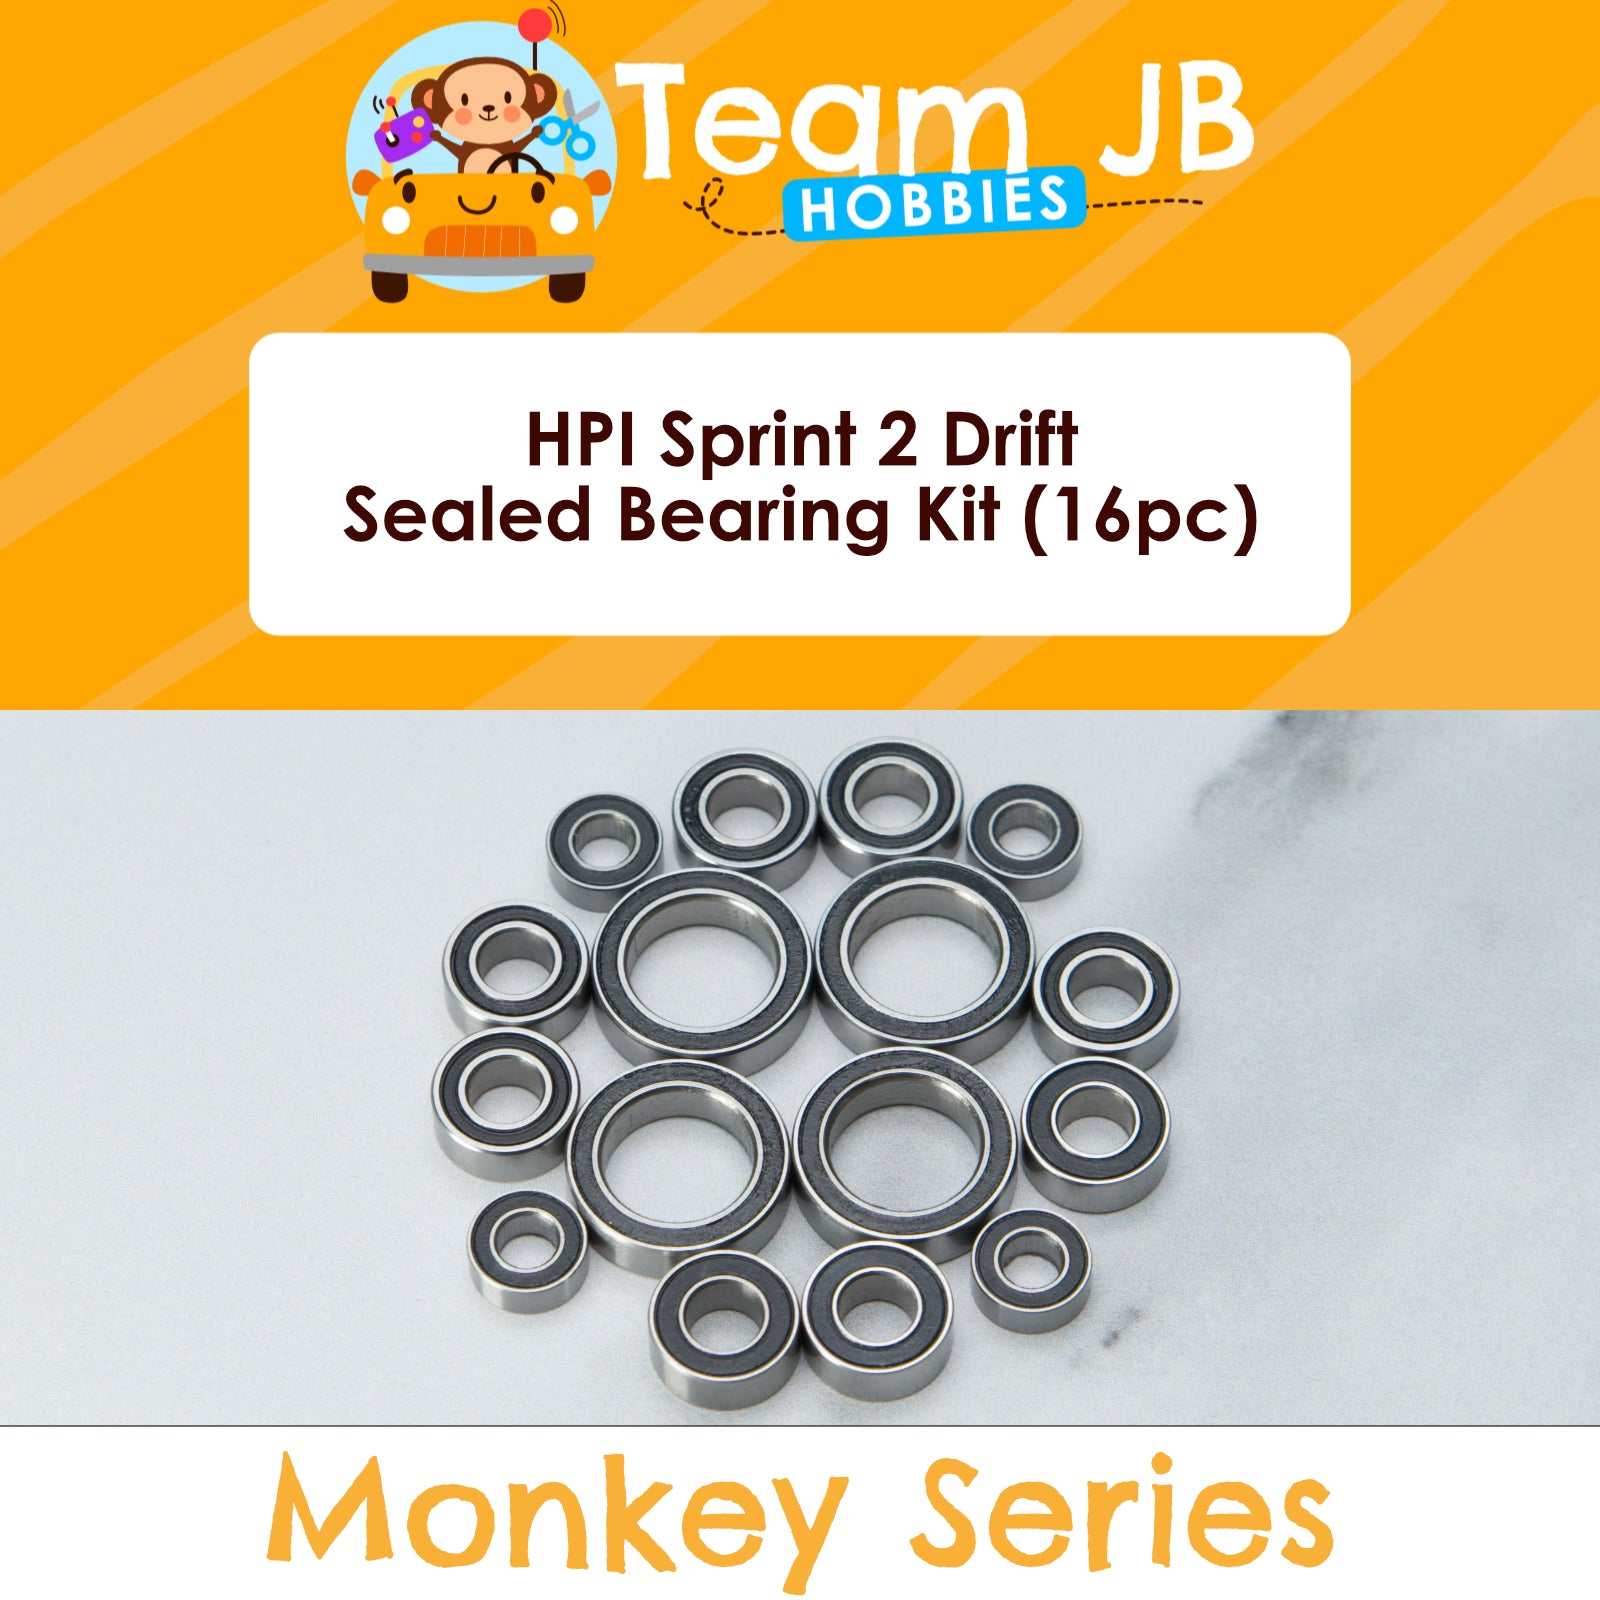 HPI Sprint 2 Drift - Sealed Bearing Kit